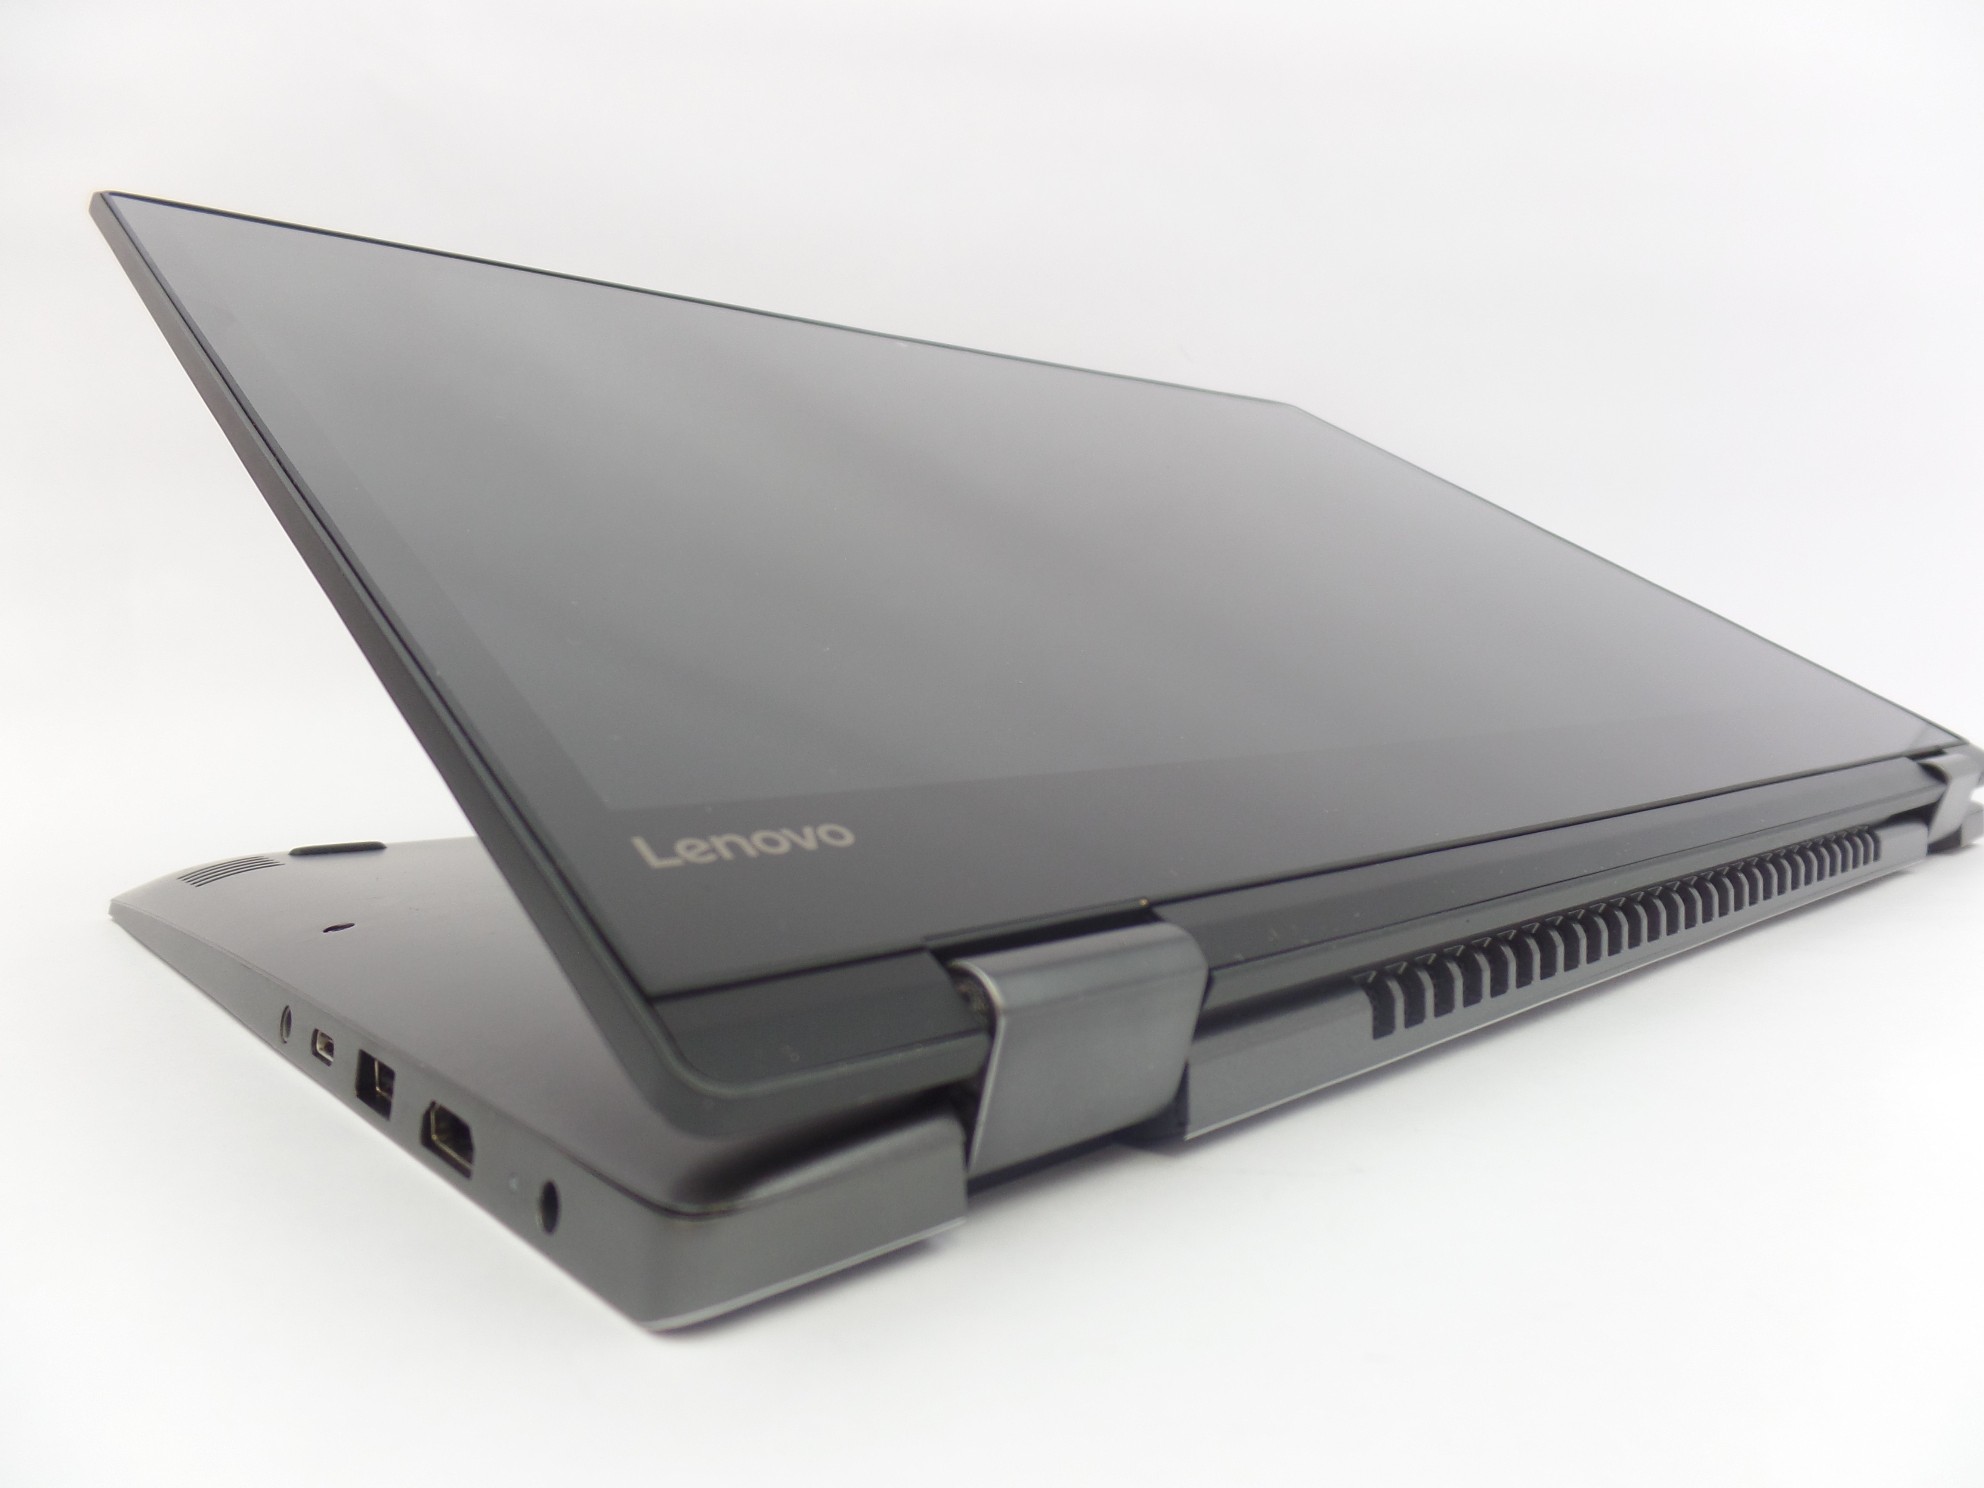 Lenovo Flex 5 1570 15.6" 4K UHD Touch i7-8550U 16GB 512GB MX130 W10H 2in1 Laptop